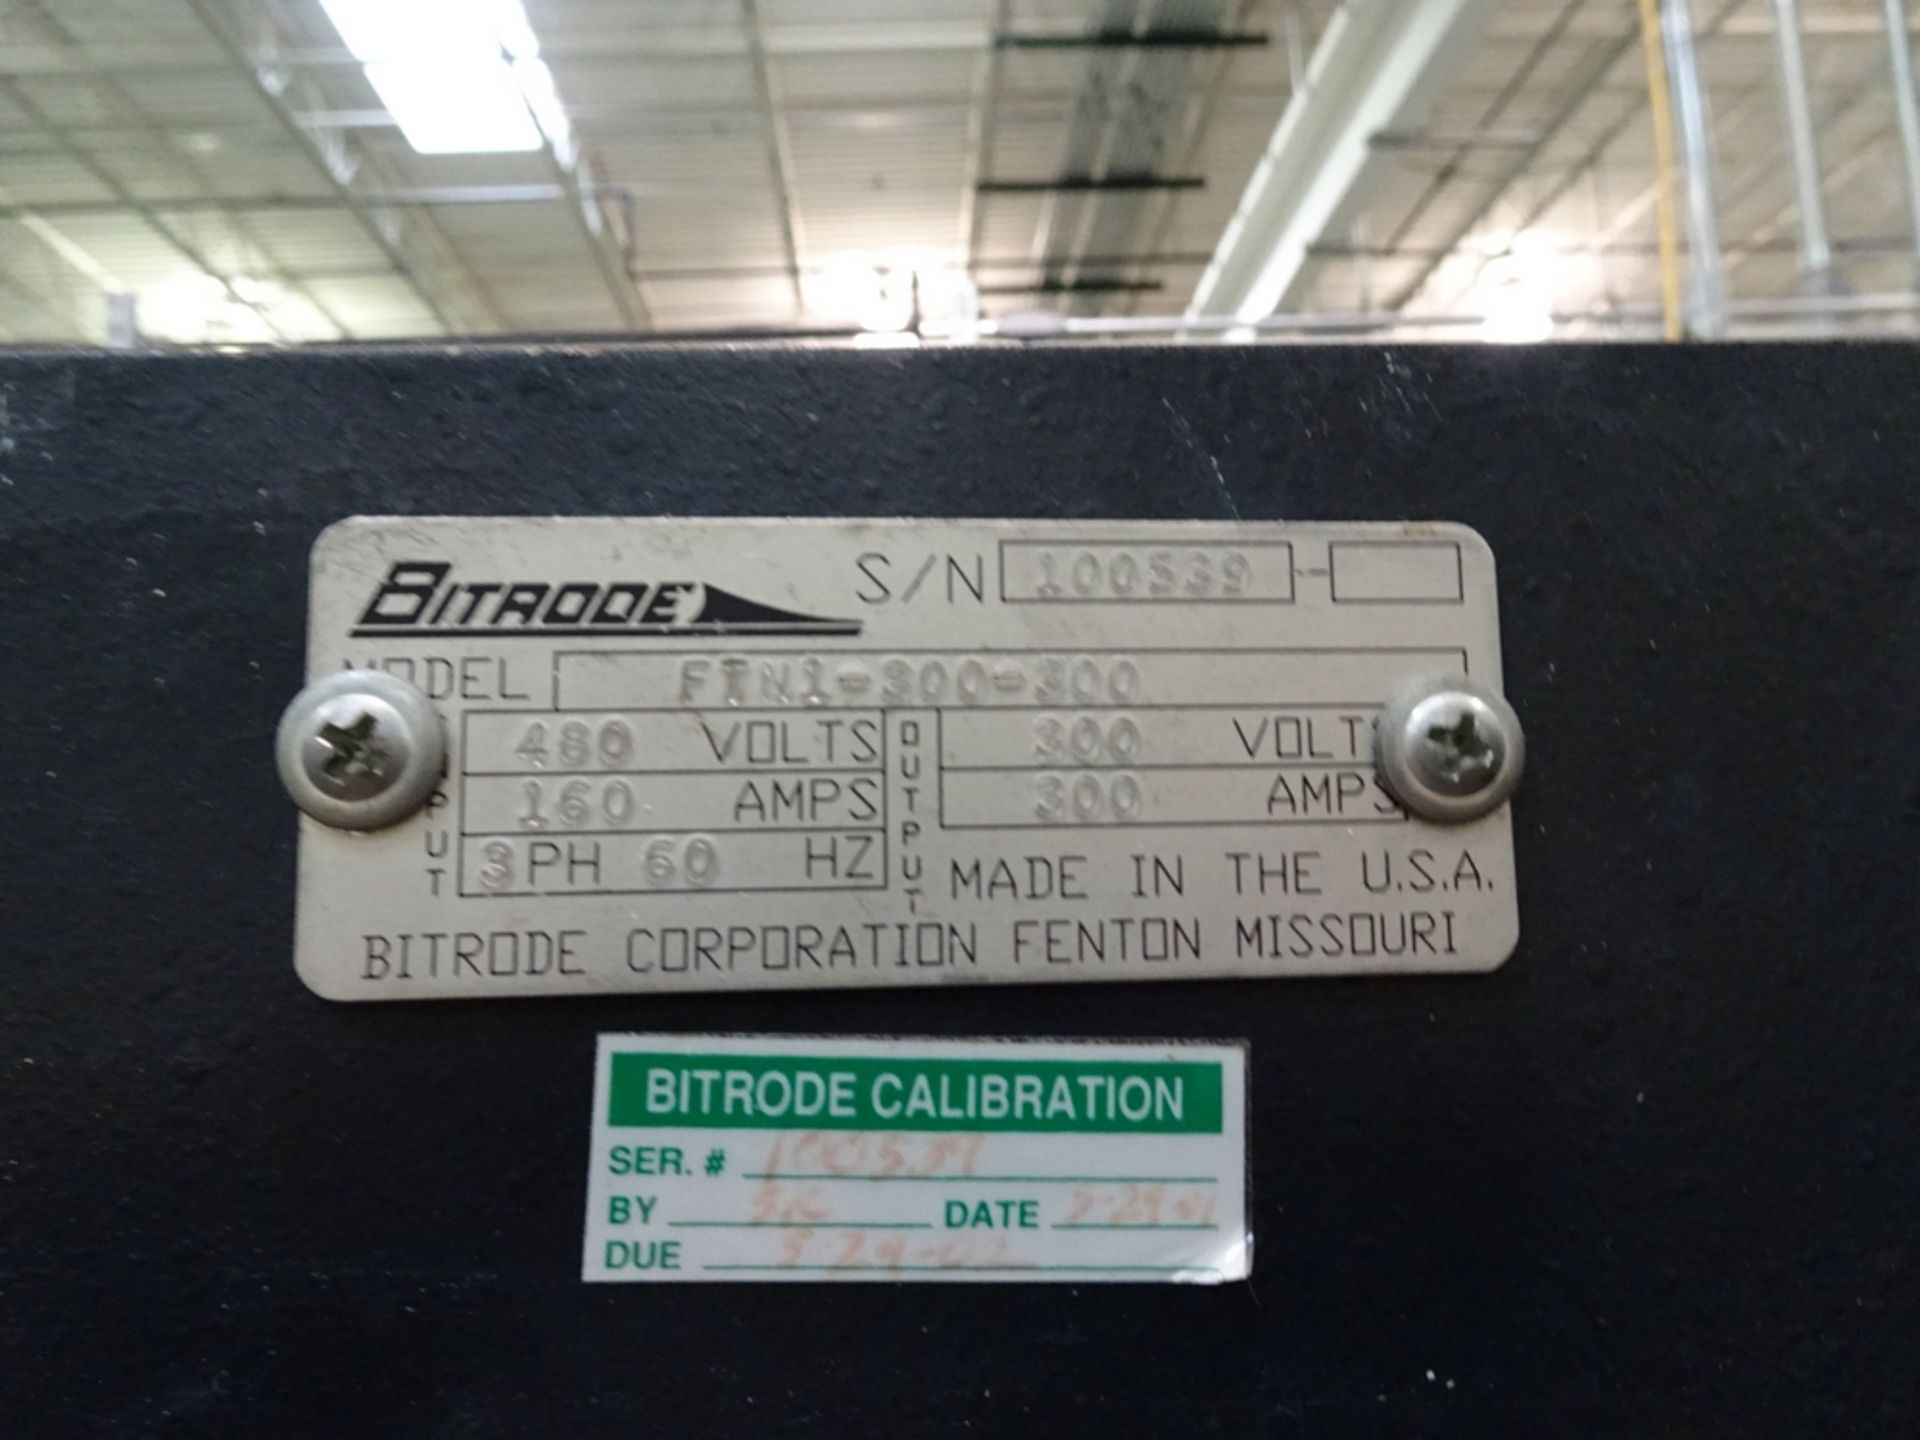 Bitrode Model FTN1-300-300 300VOLT 300AMP Battery Test Set S/N 100539 480 V, 3-Phase, 60 Hz, 160 - Image 3 of 3